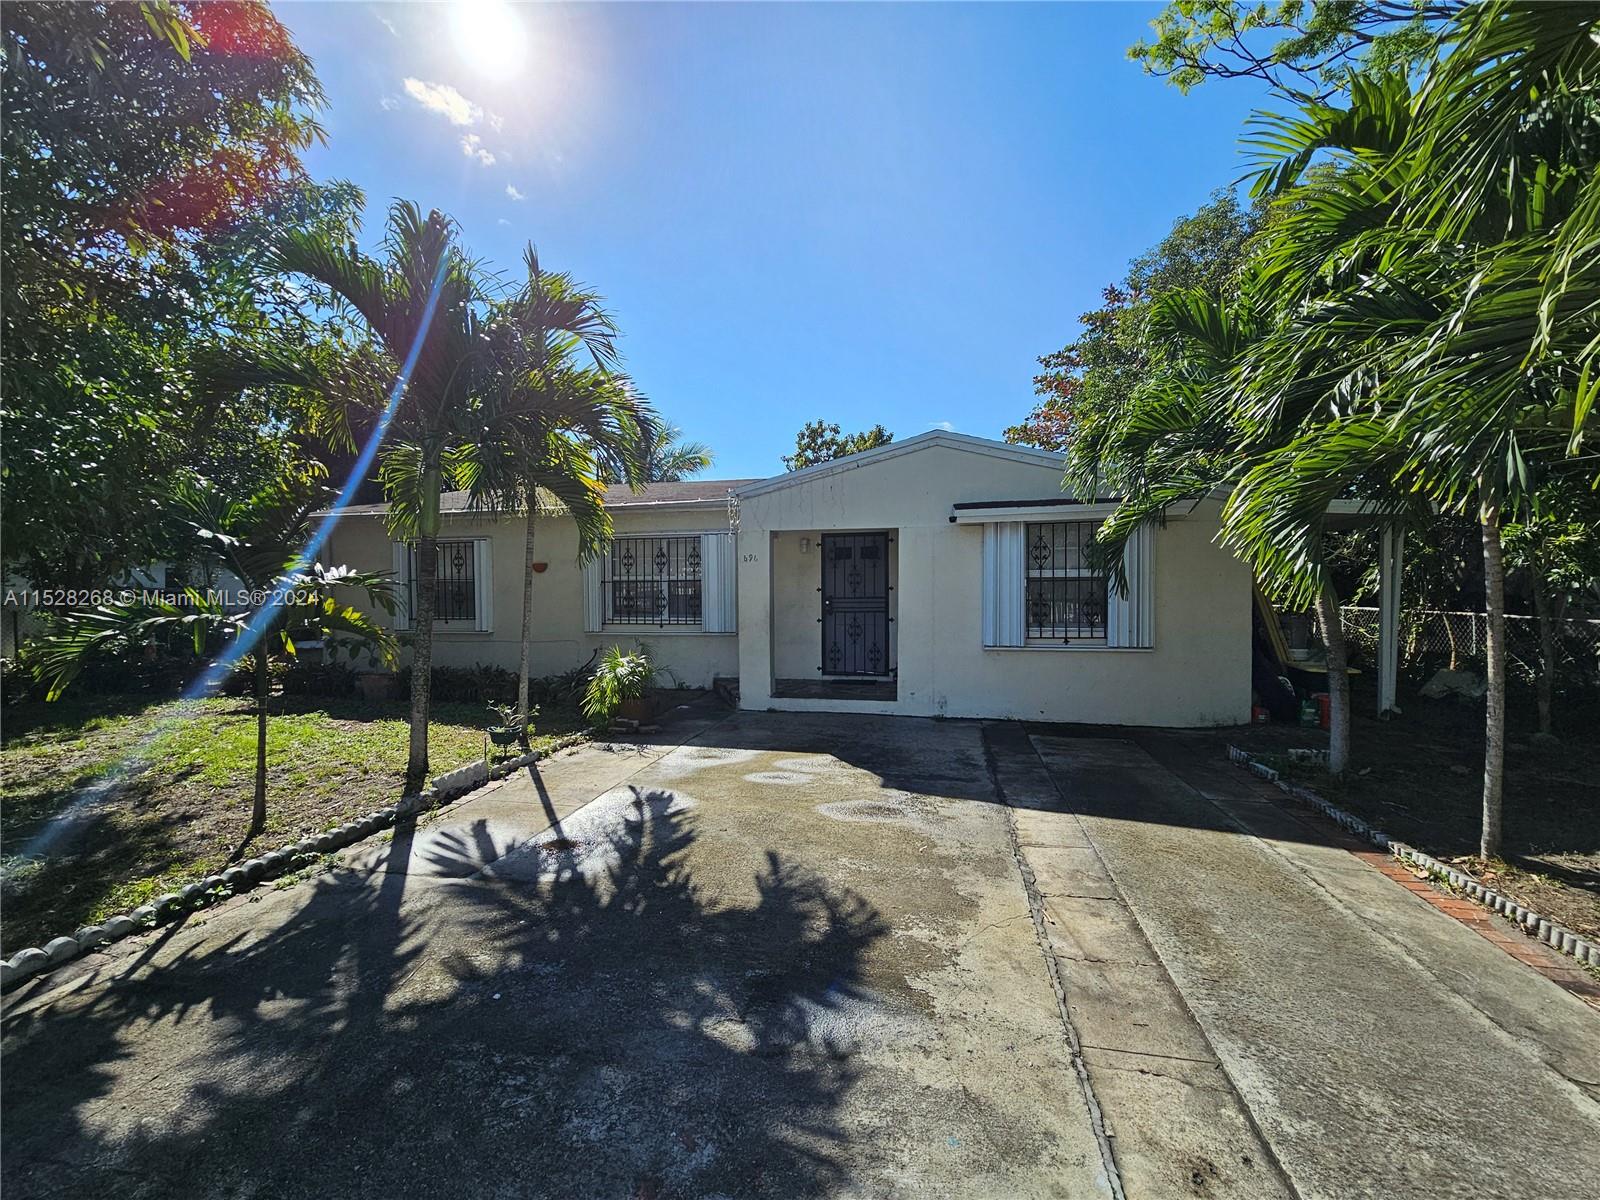 Rental Property at 596 Nw 109th St St, Miami, Broward County, Florida -  - $660,000 MO.